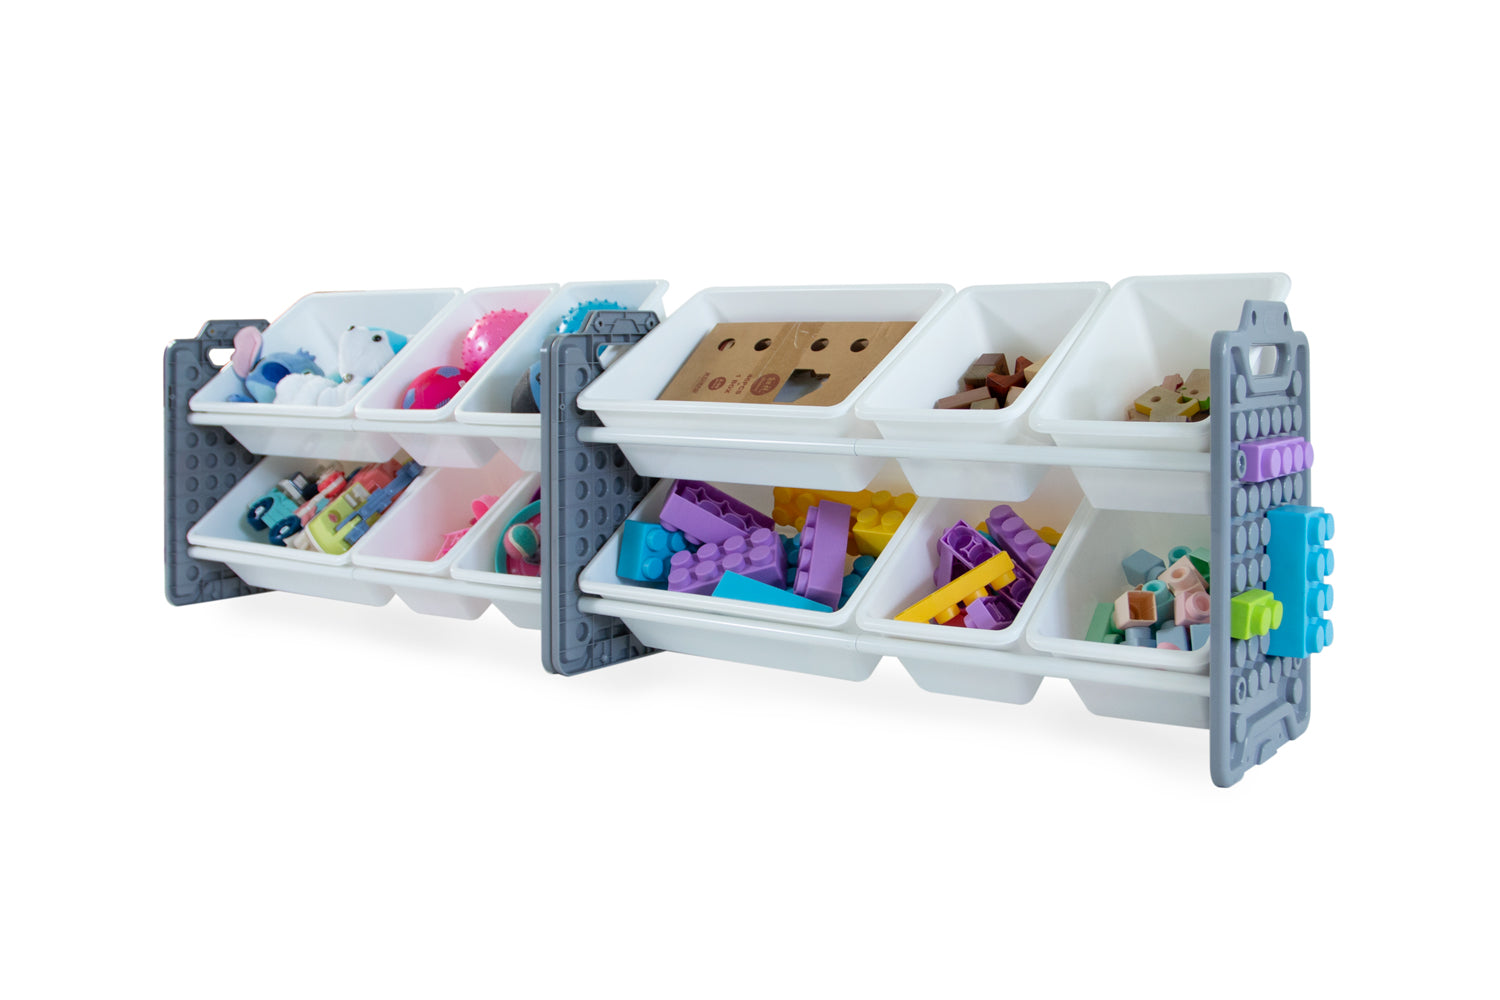 UNiPLAY 12 Bins Toy Storage Organizer - Gray (UB45612)